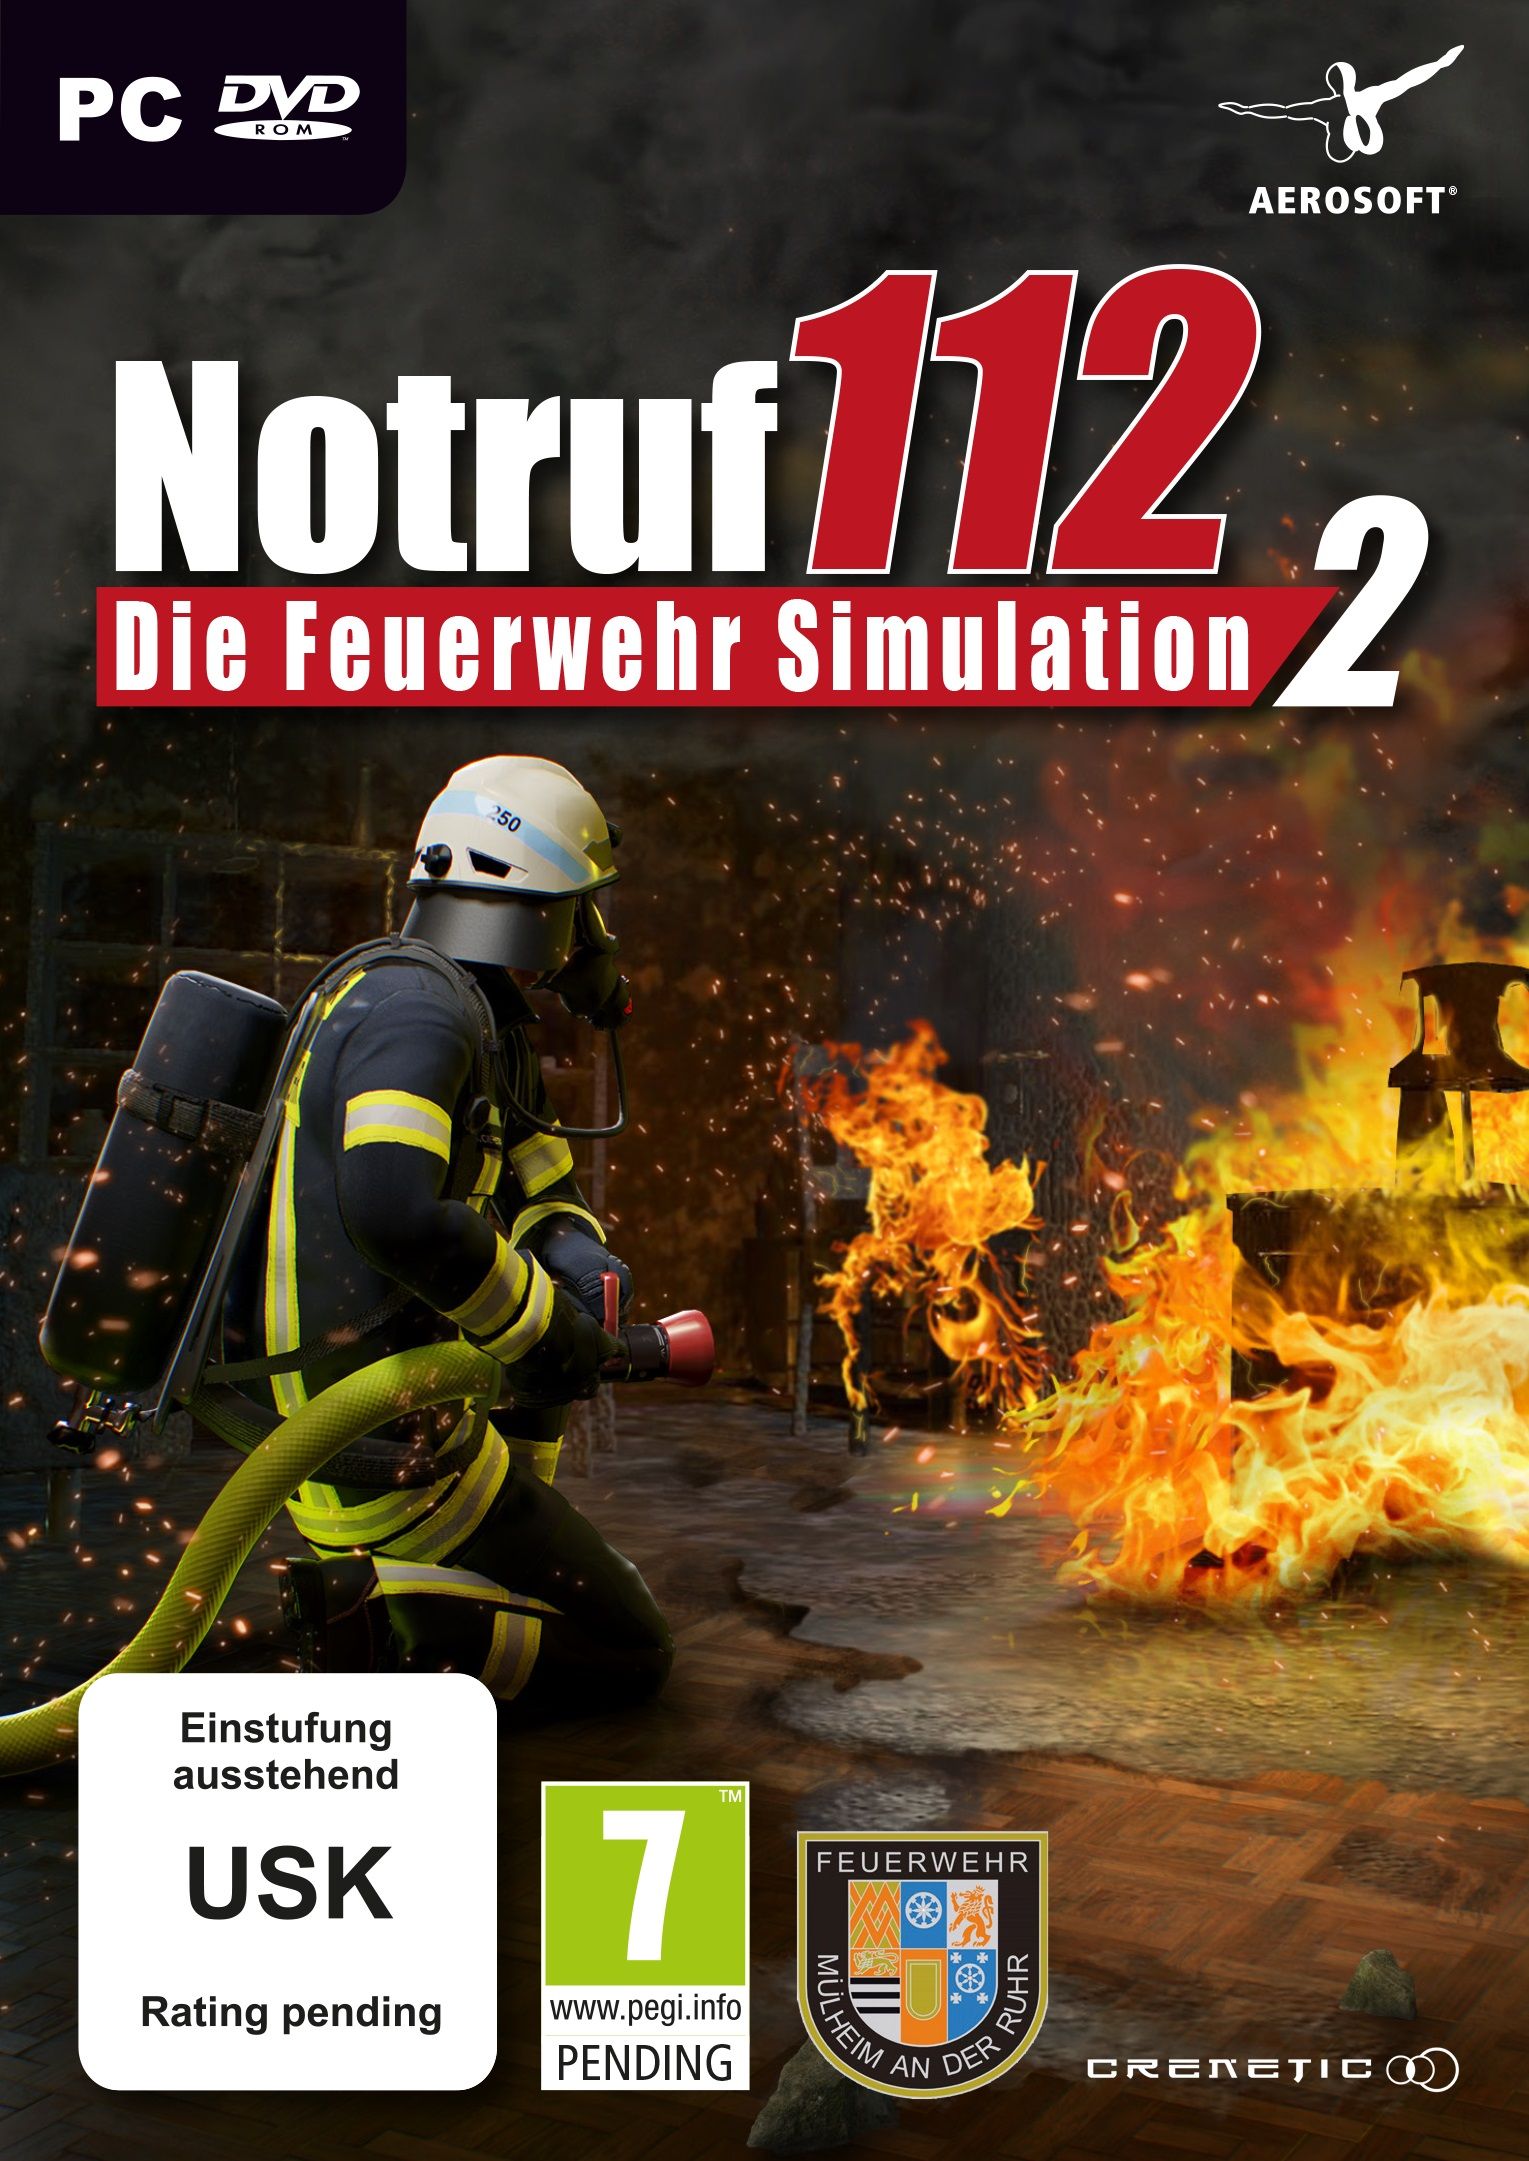 Notruf 112 - Die Feuerwehr Simulation 2 [PC] (D) - Thali